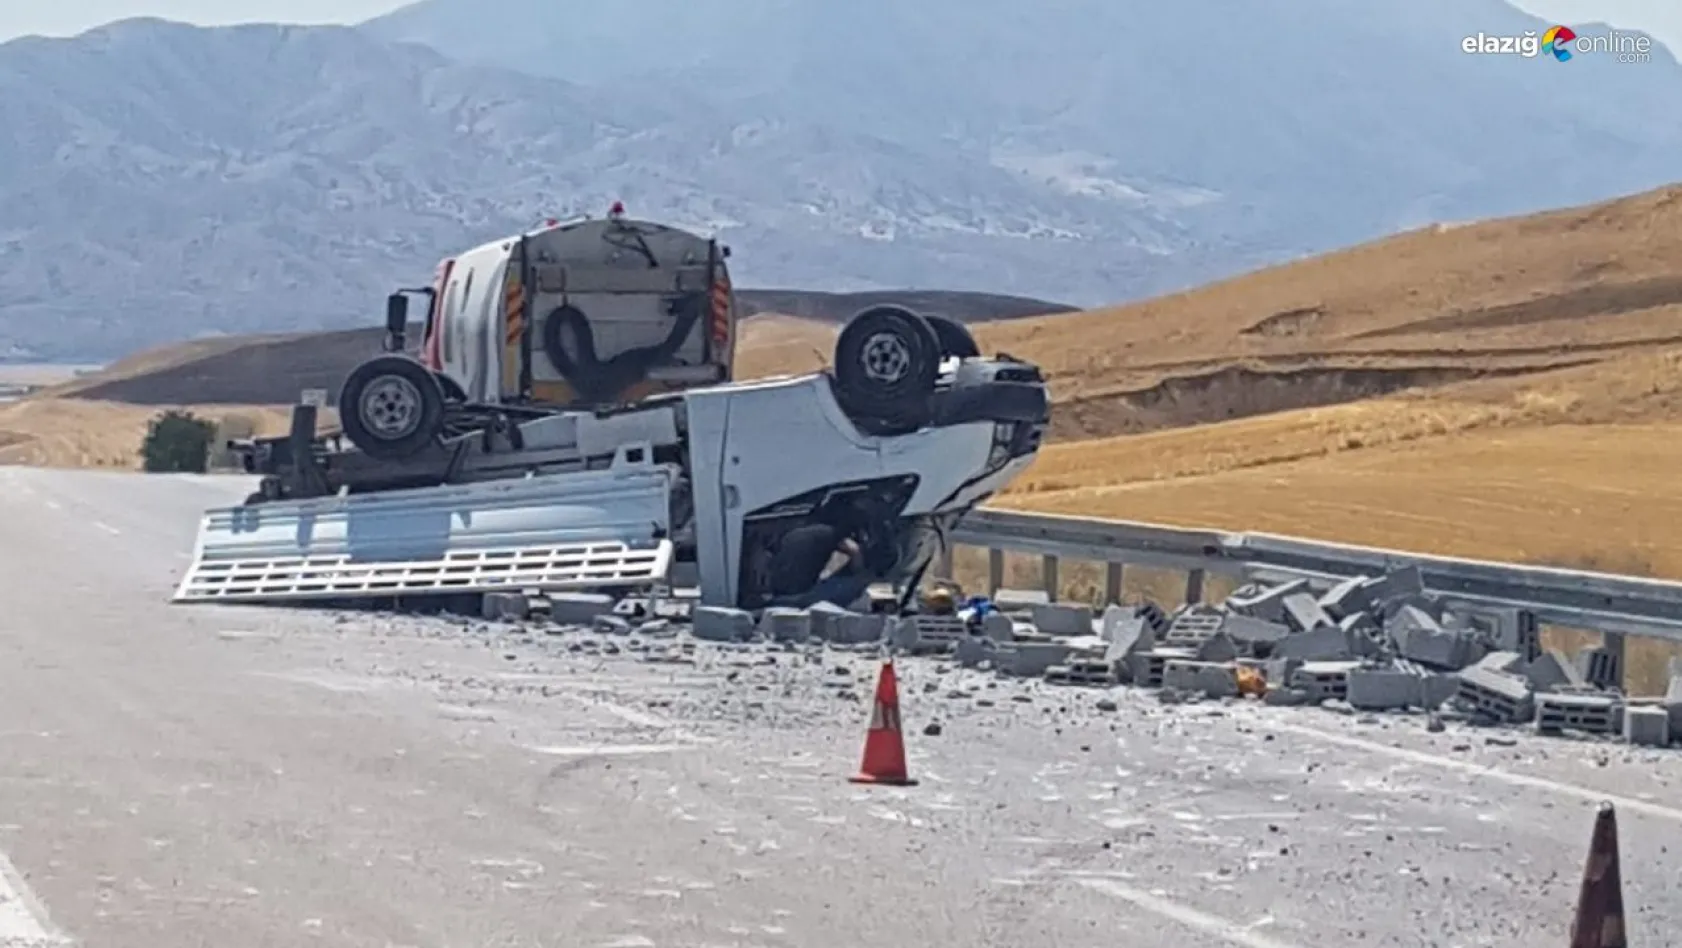 Elazığ-Bingöl karayolunda feci kaza! 1 ölü 2 yaralı